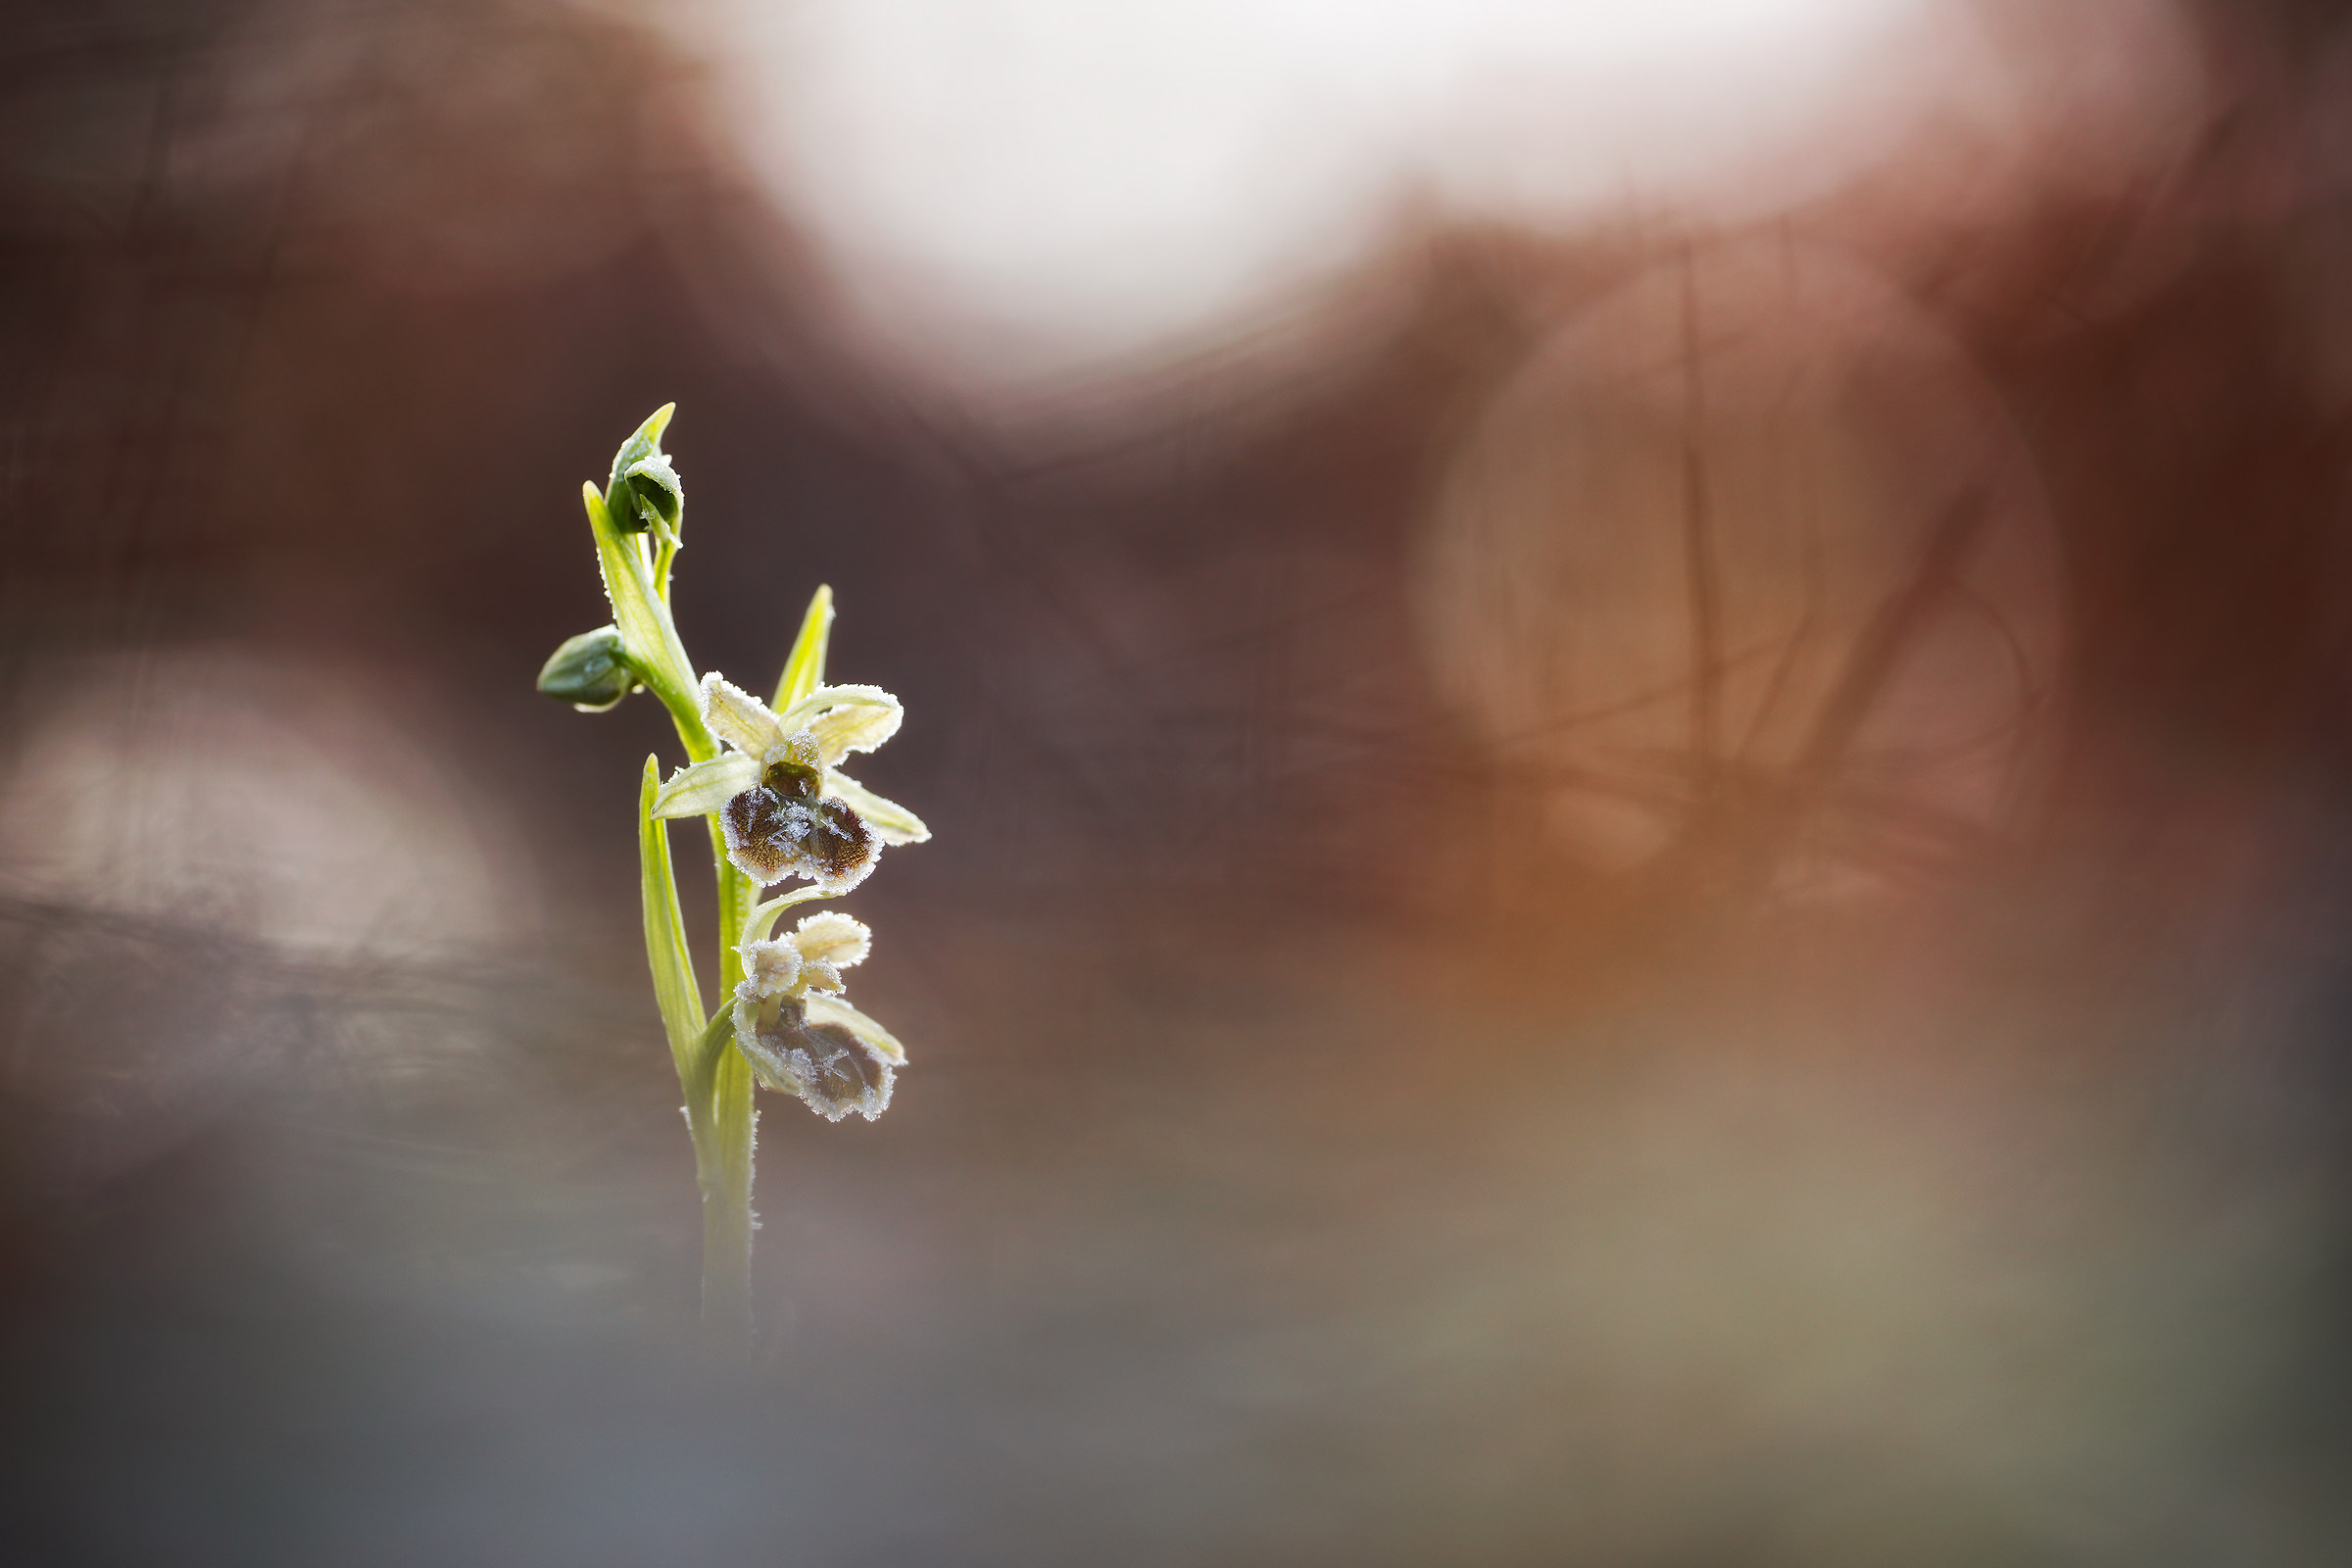 Ophrys sphegodes "subsp. brinata"...